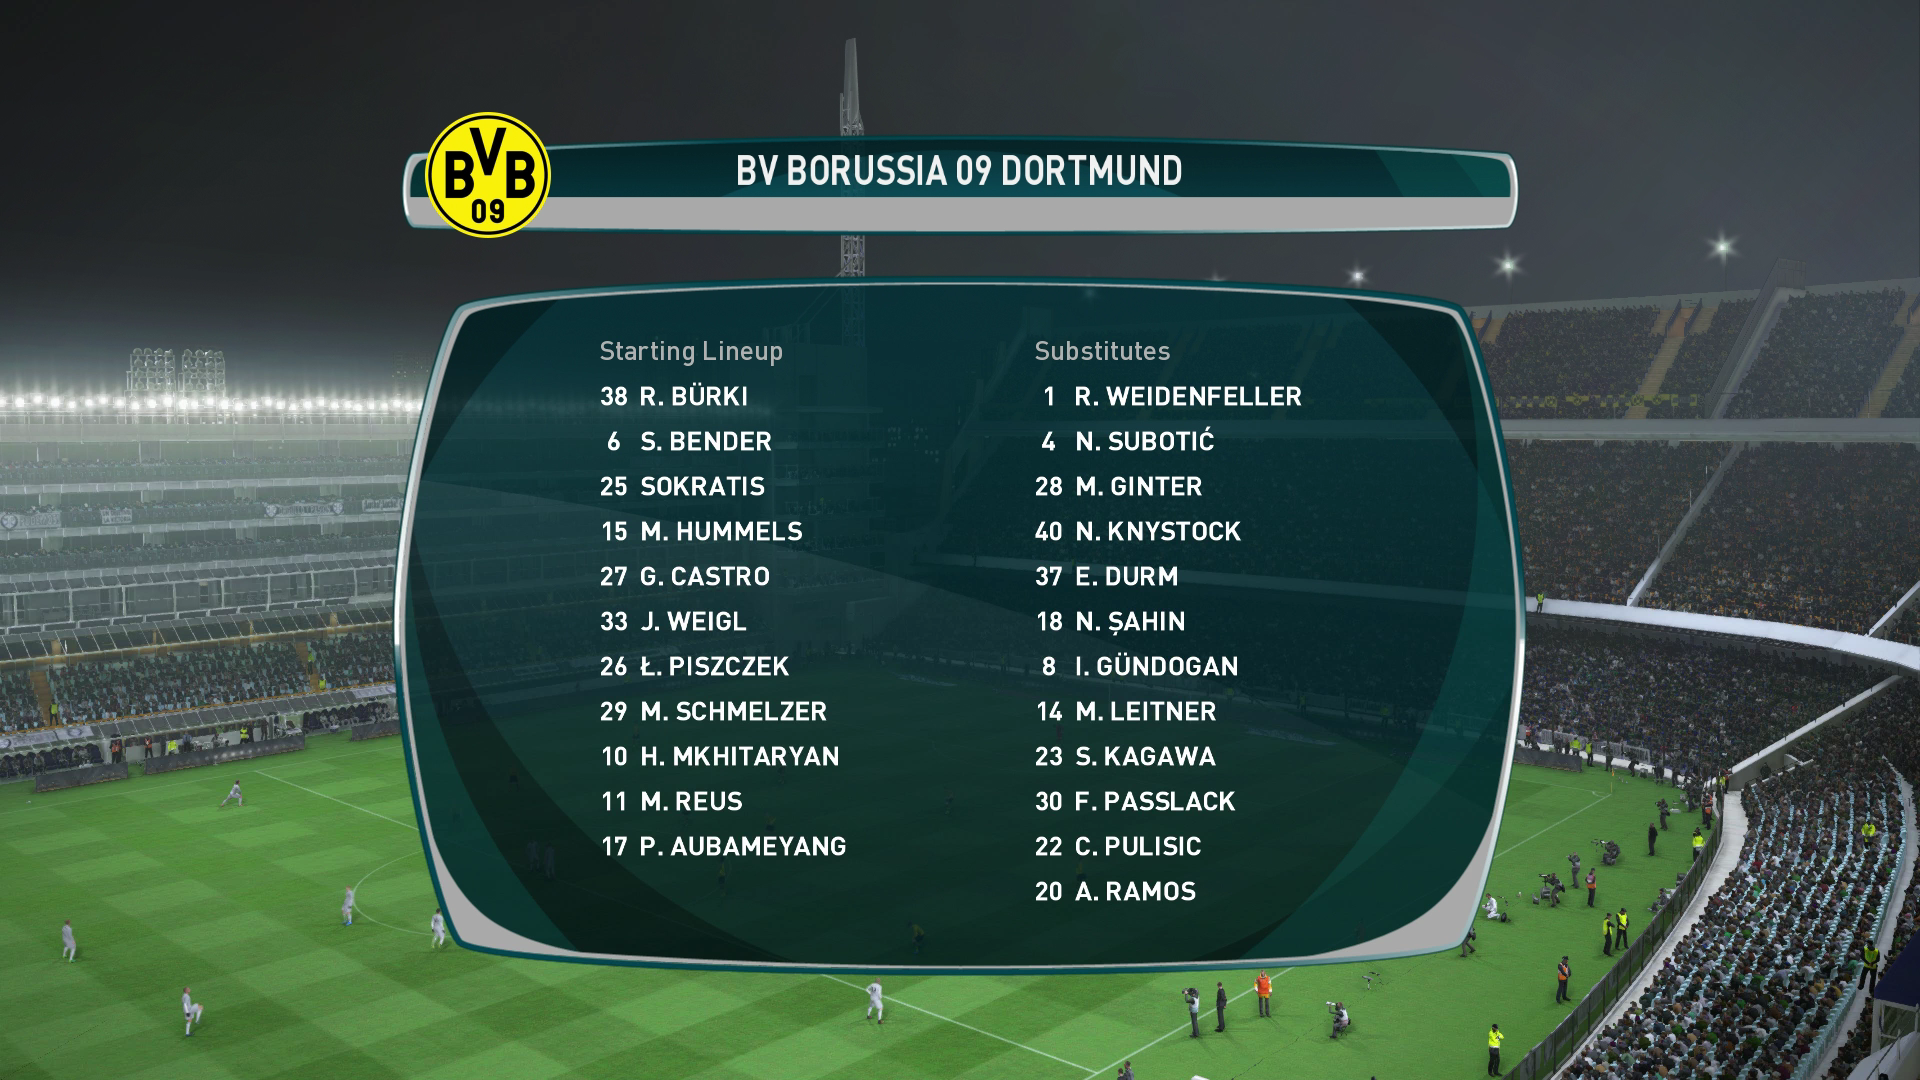 PES 2017 Dortmund lineup